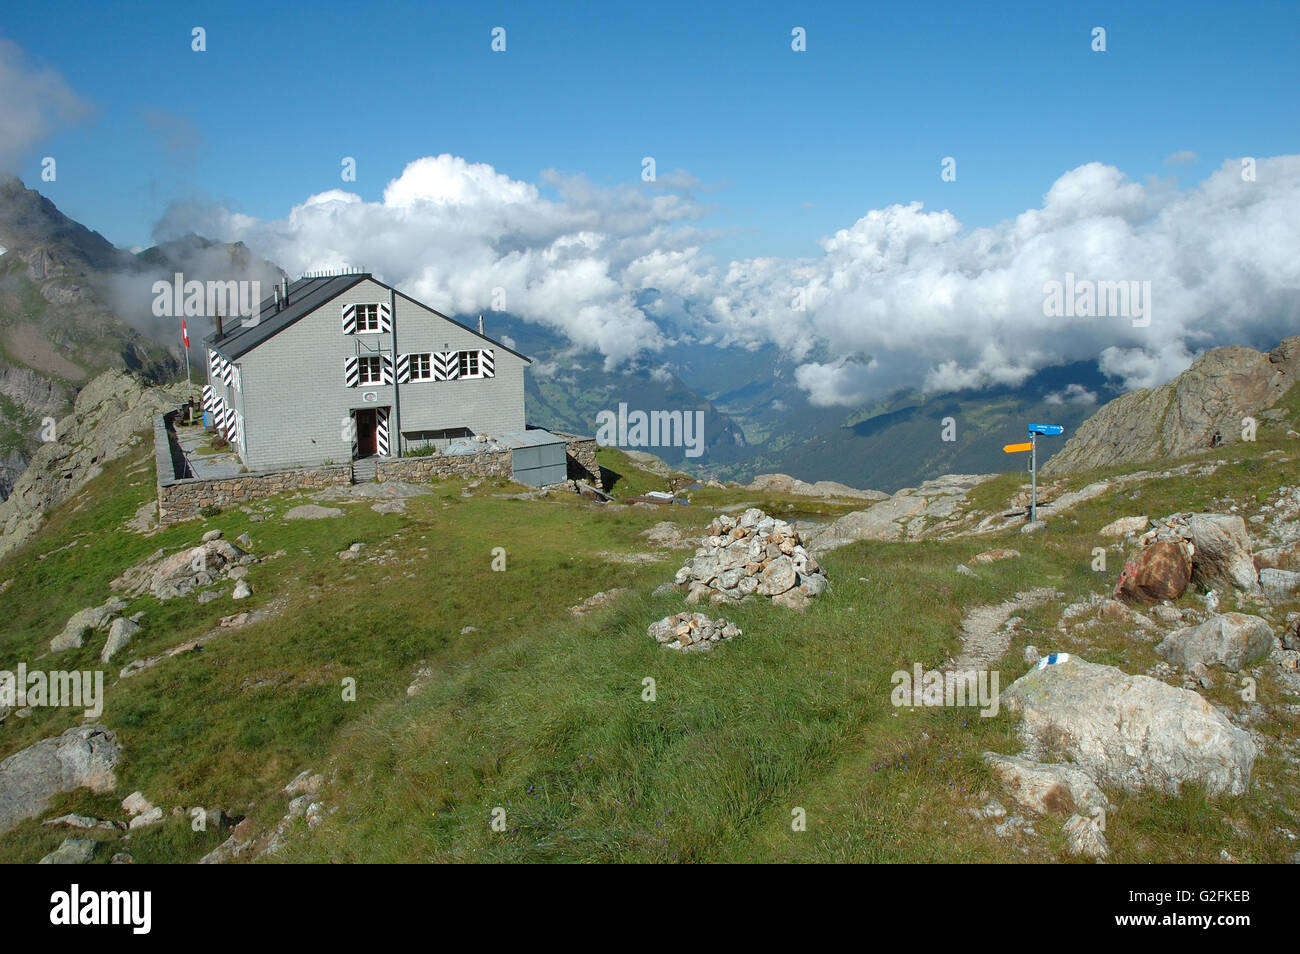 Grindelwald, Switzerland - August 21, 2014: Glecksteinhutte mountain hostel nearby Grindelwald Alps in Switzerland. Stock Photo